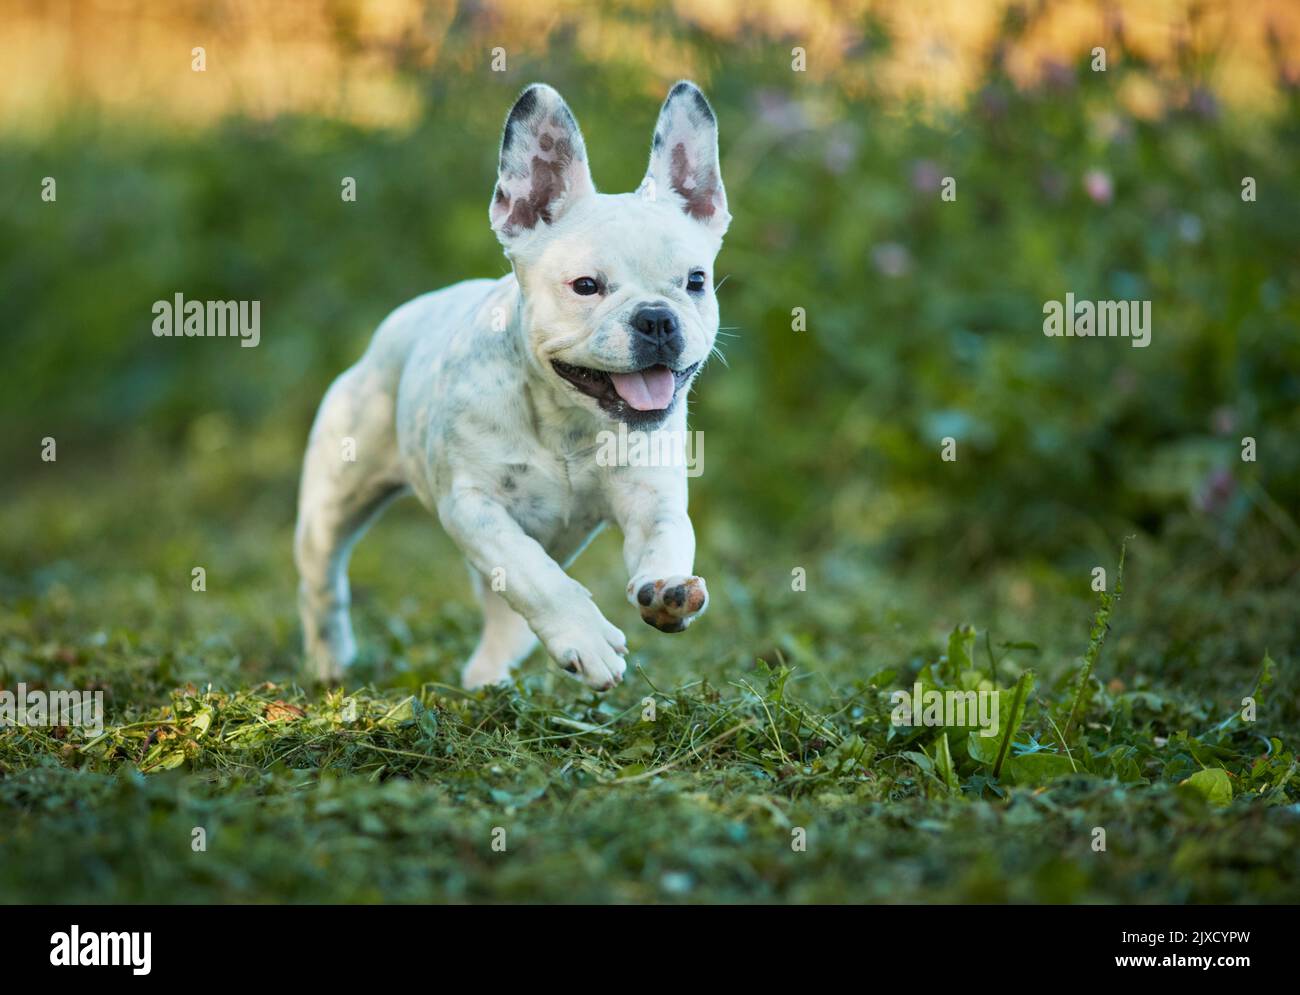 Bulldog français, chiot courant dans un pré. Allemagne Banque D'Images